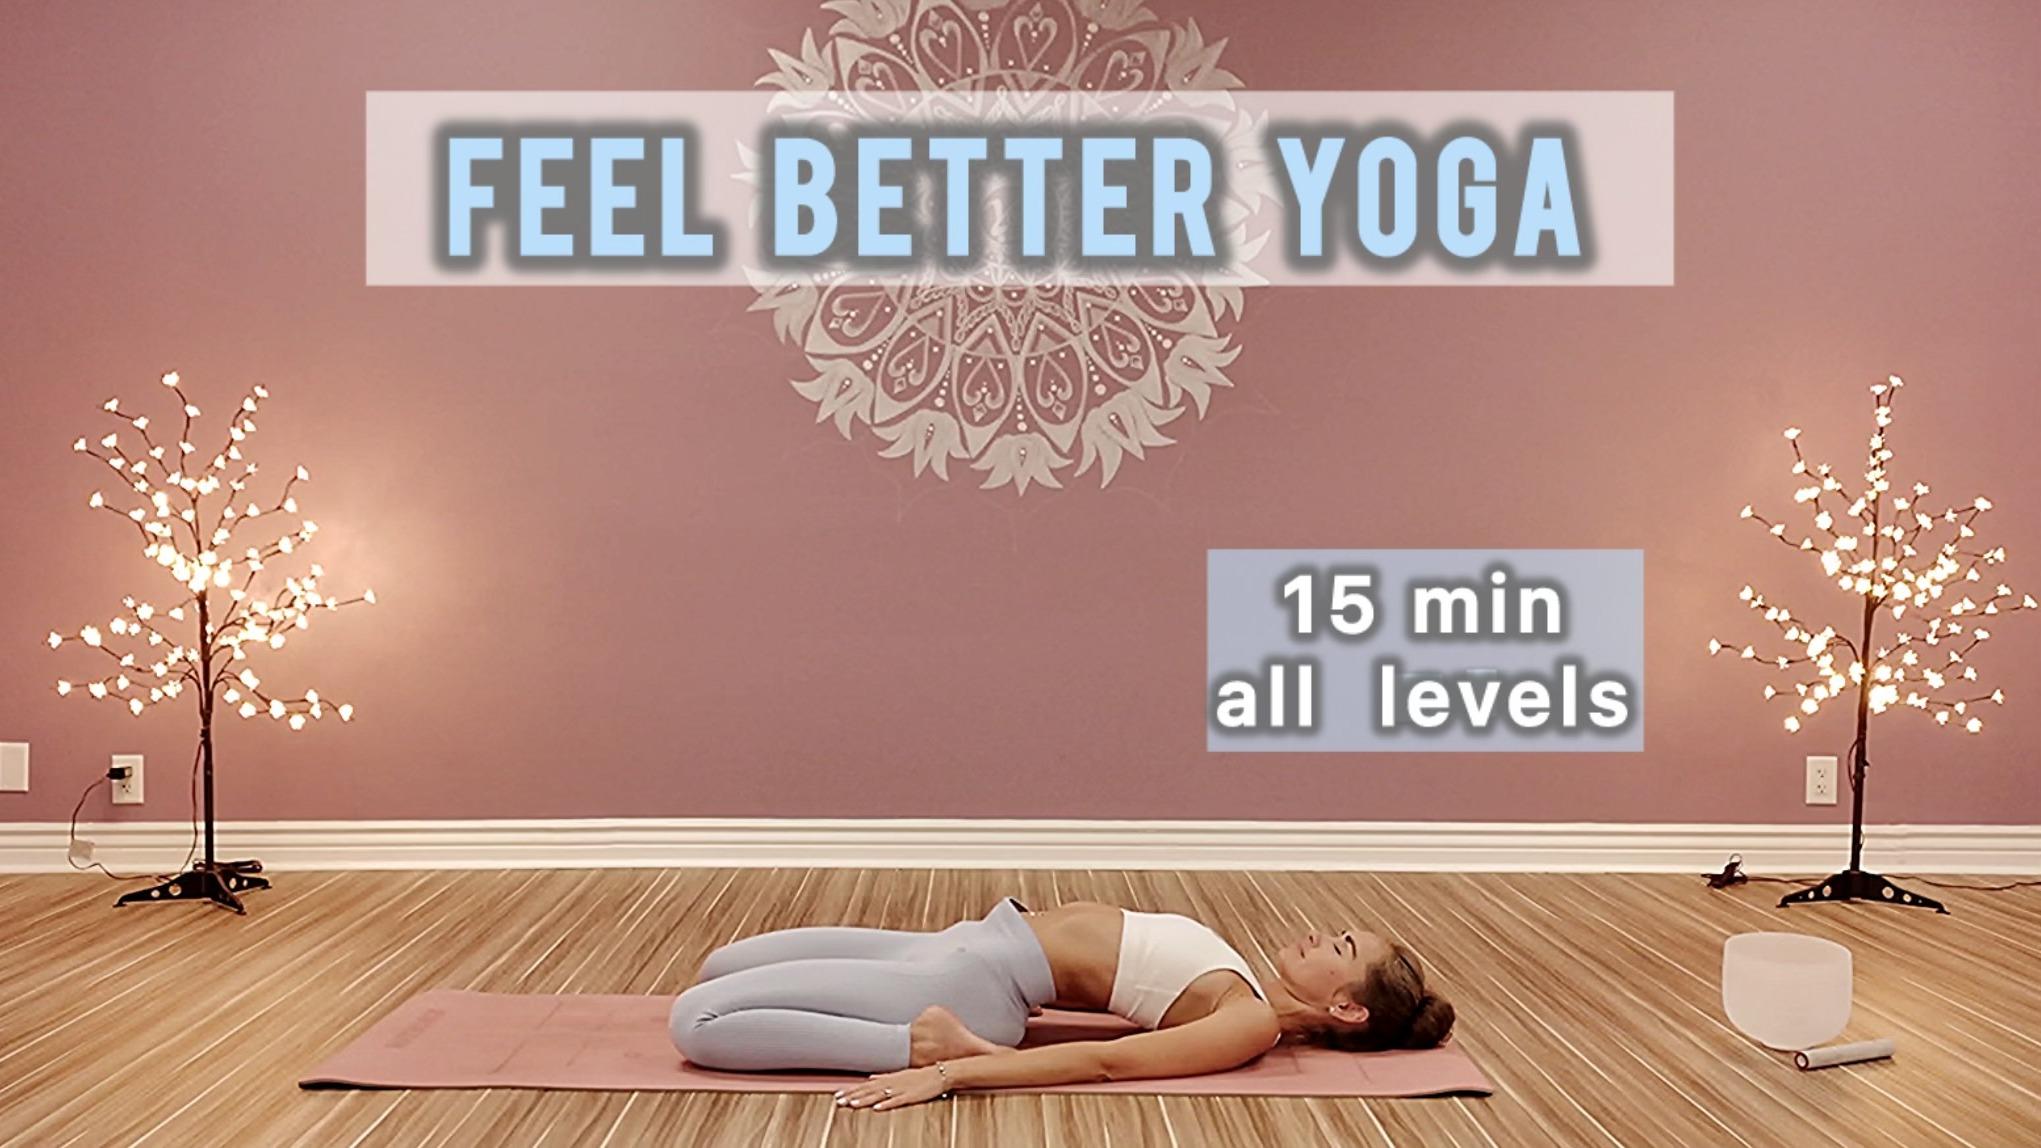 15 min feel better yoga